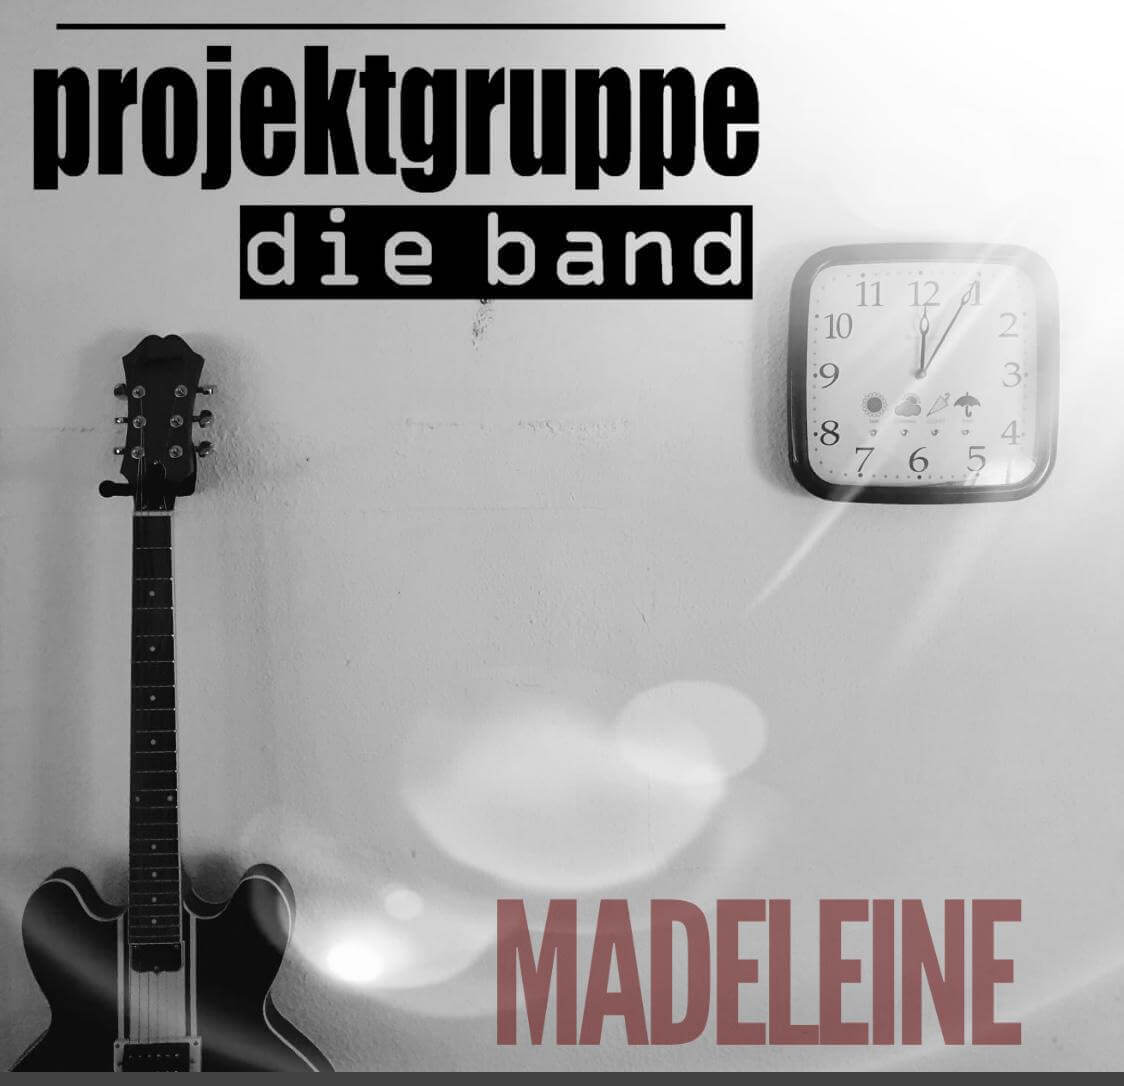 Madeleine | projektgruppe die band